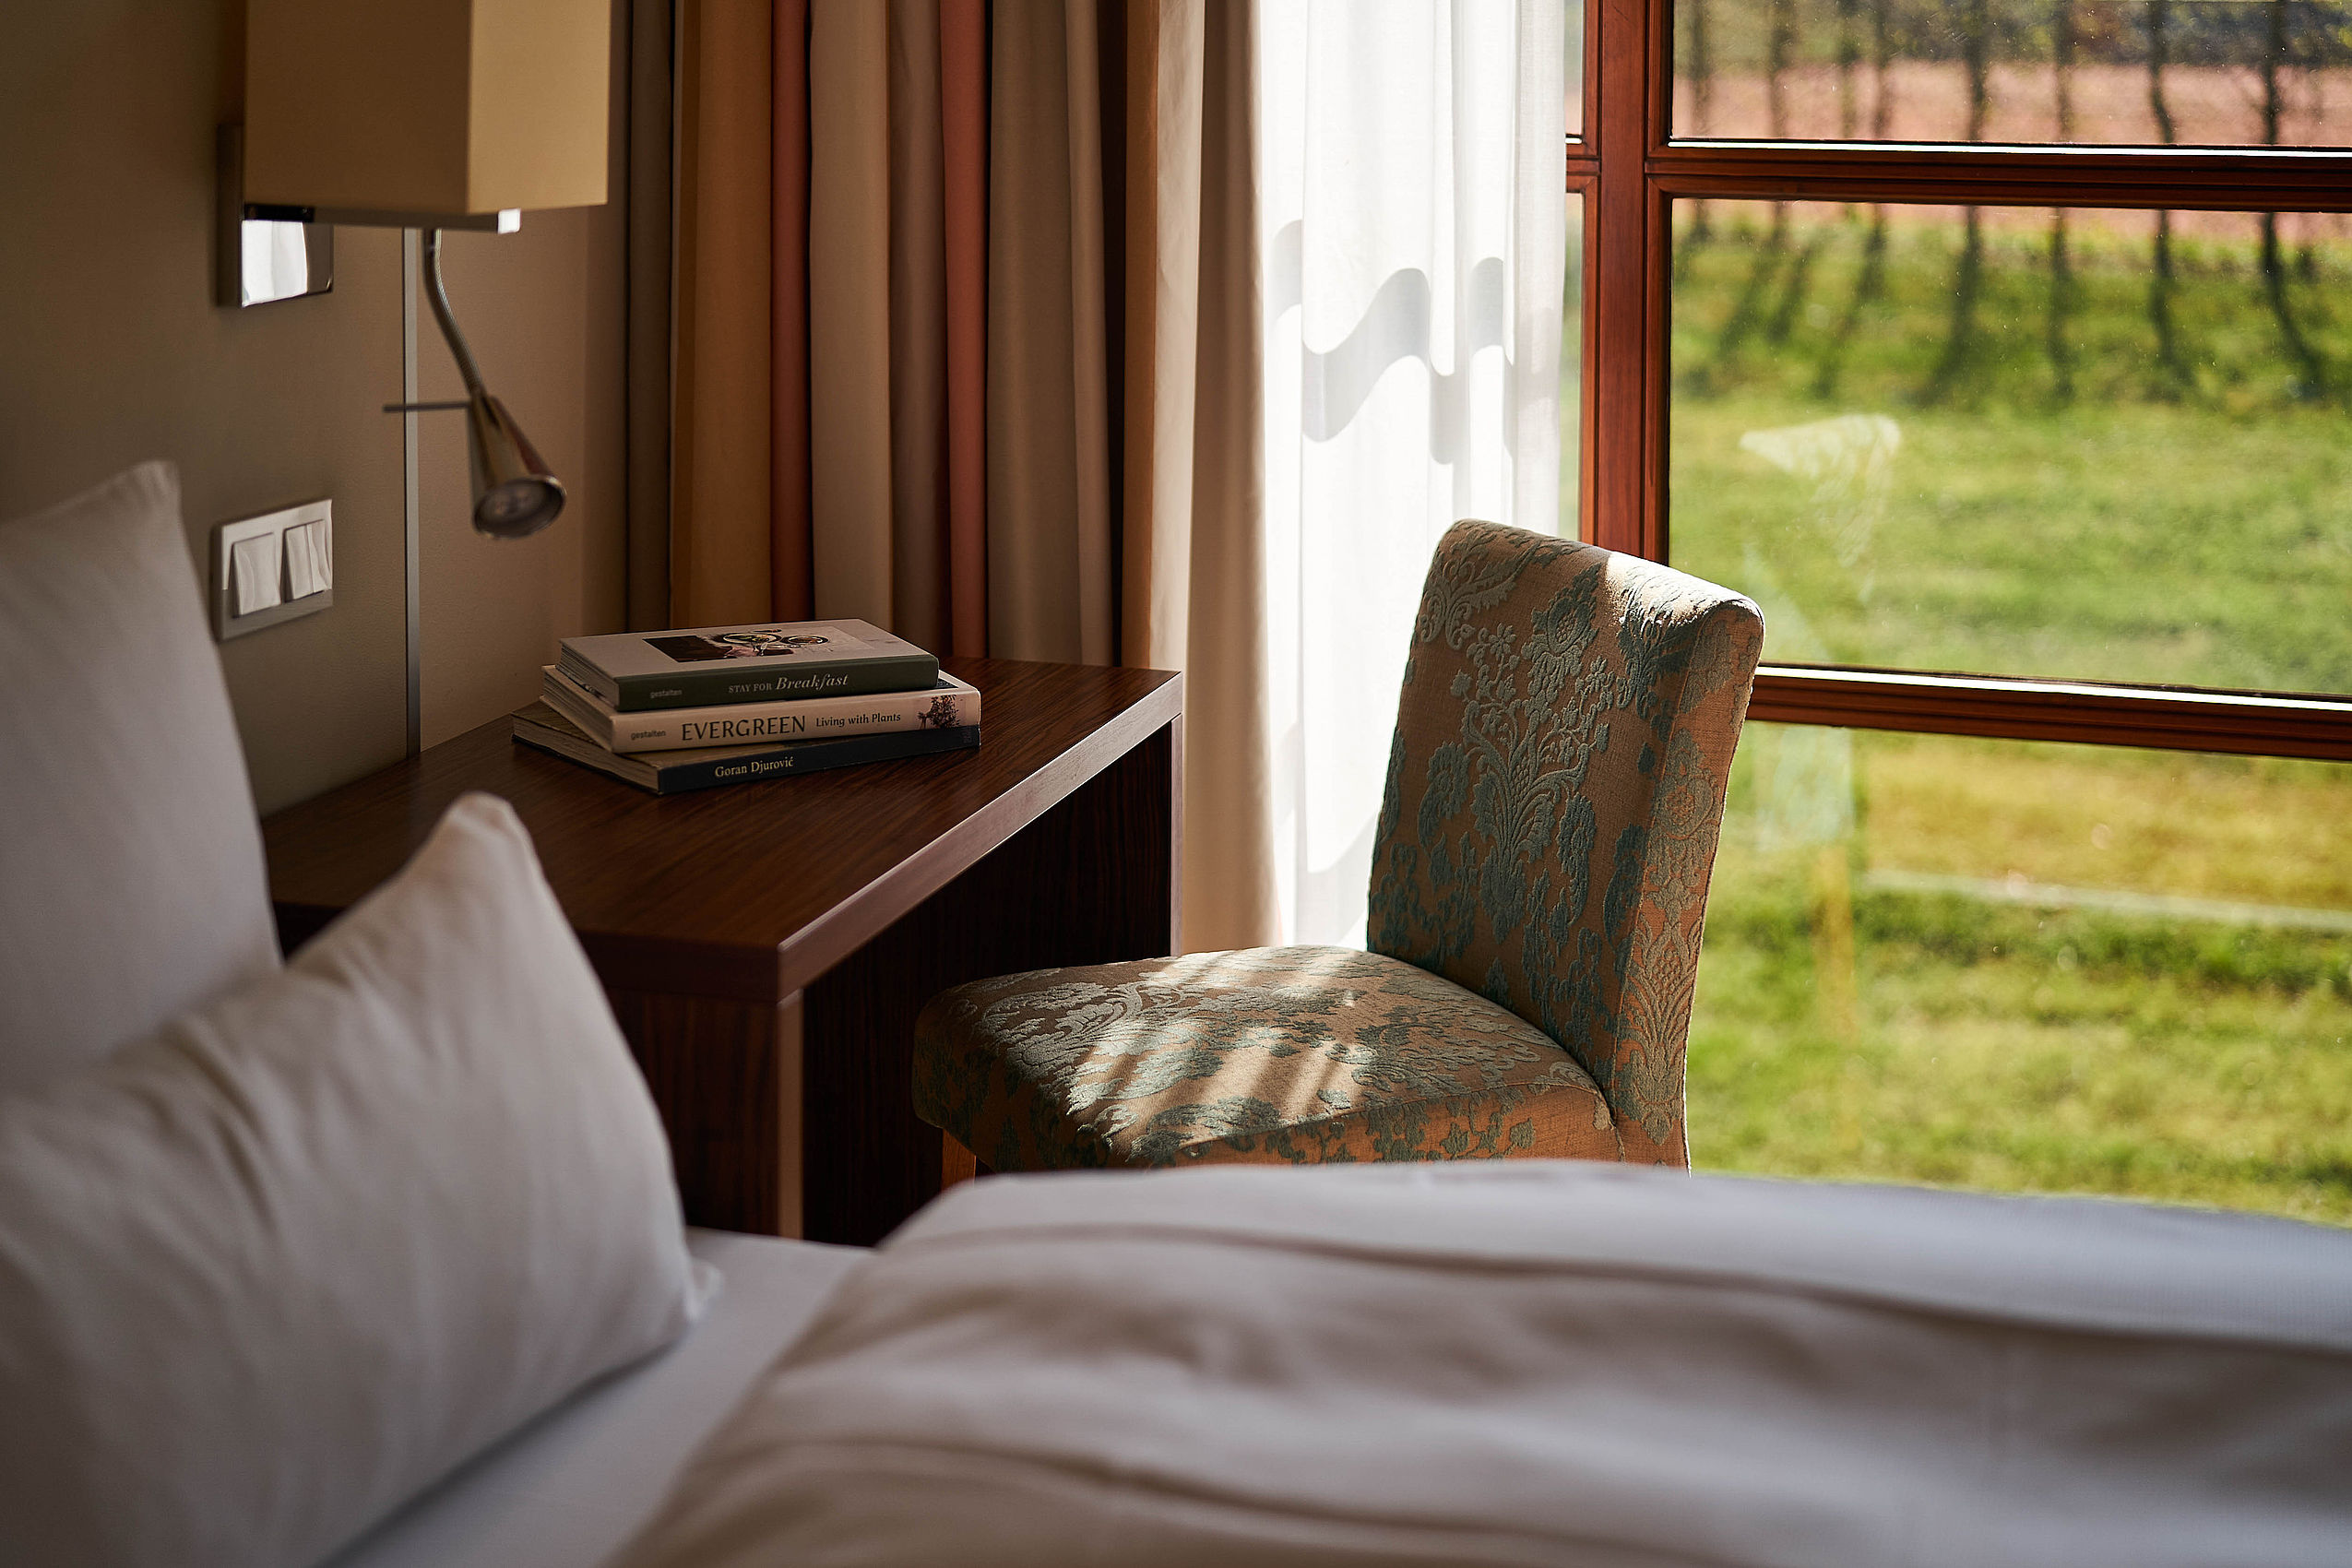 Nahaufnahme eines frisch bezogenen Betts mit grauer Bettwäsche in einem der FREIgeist Hotels